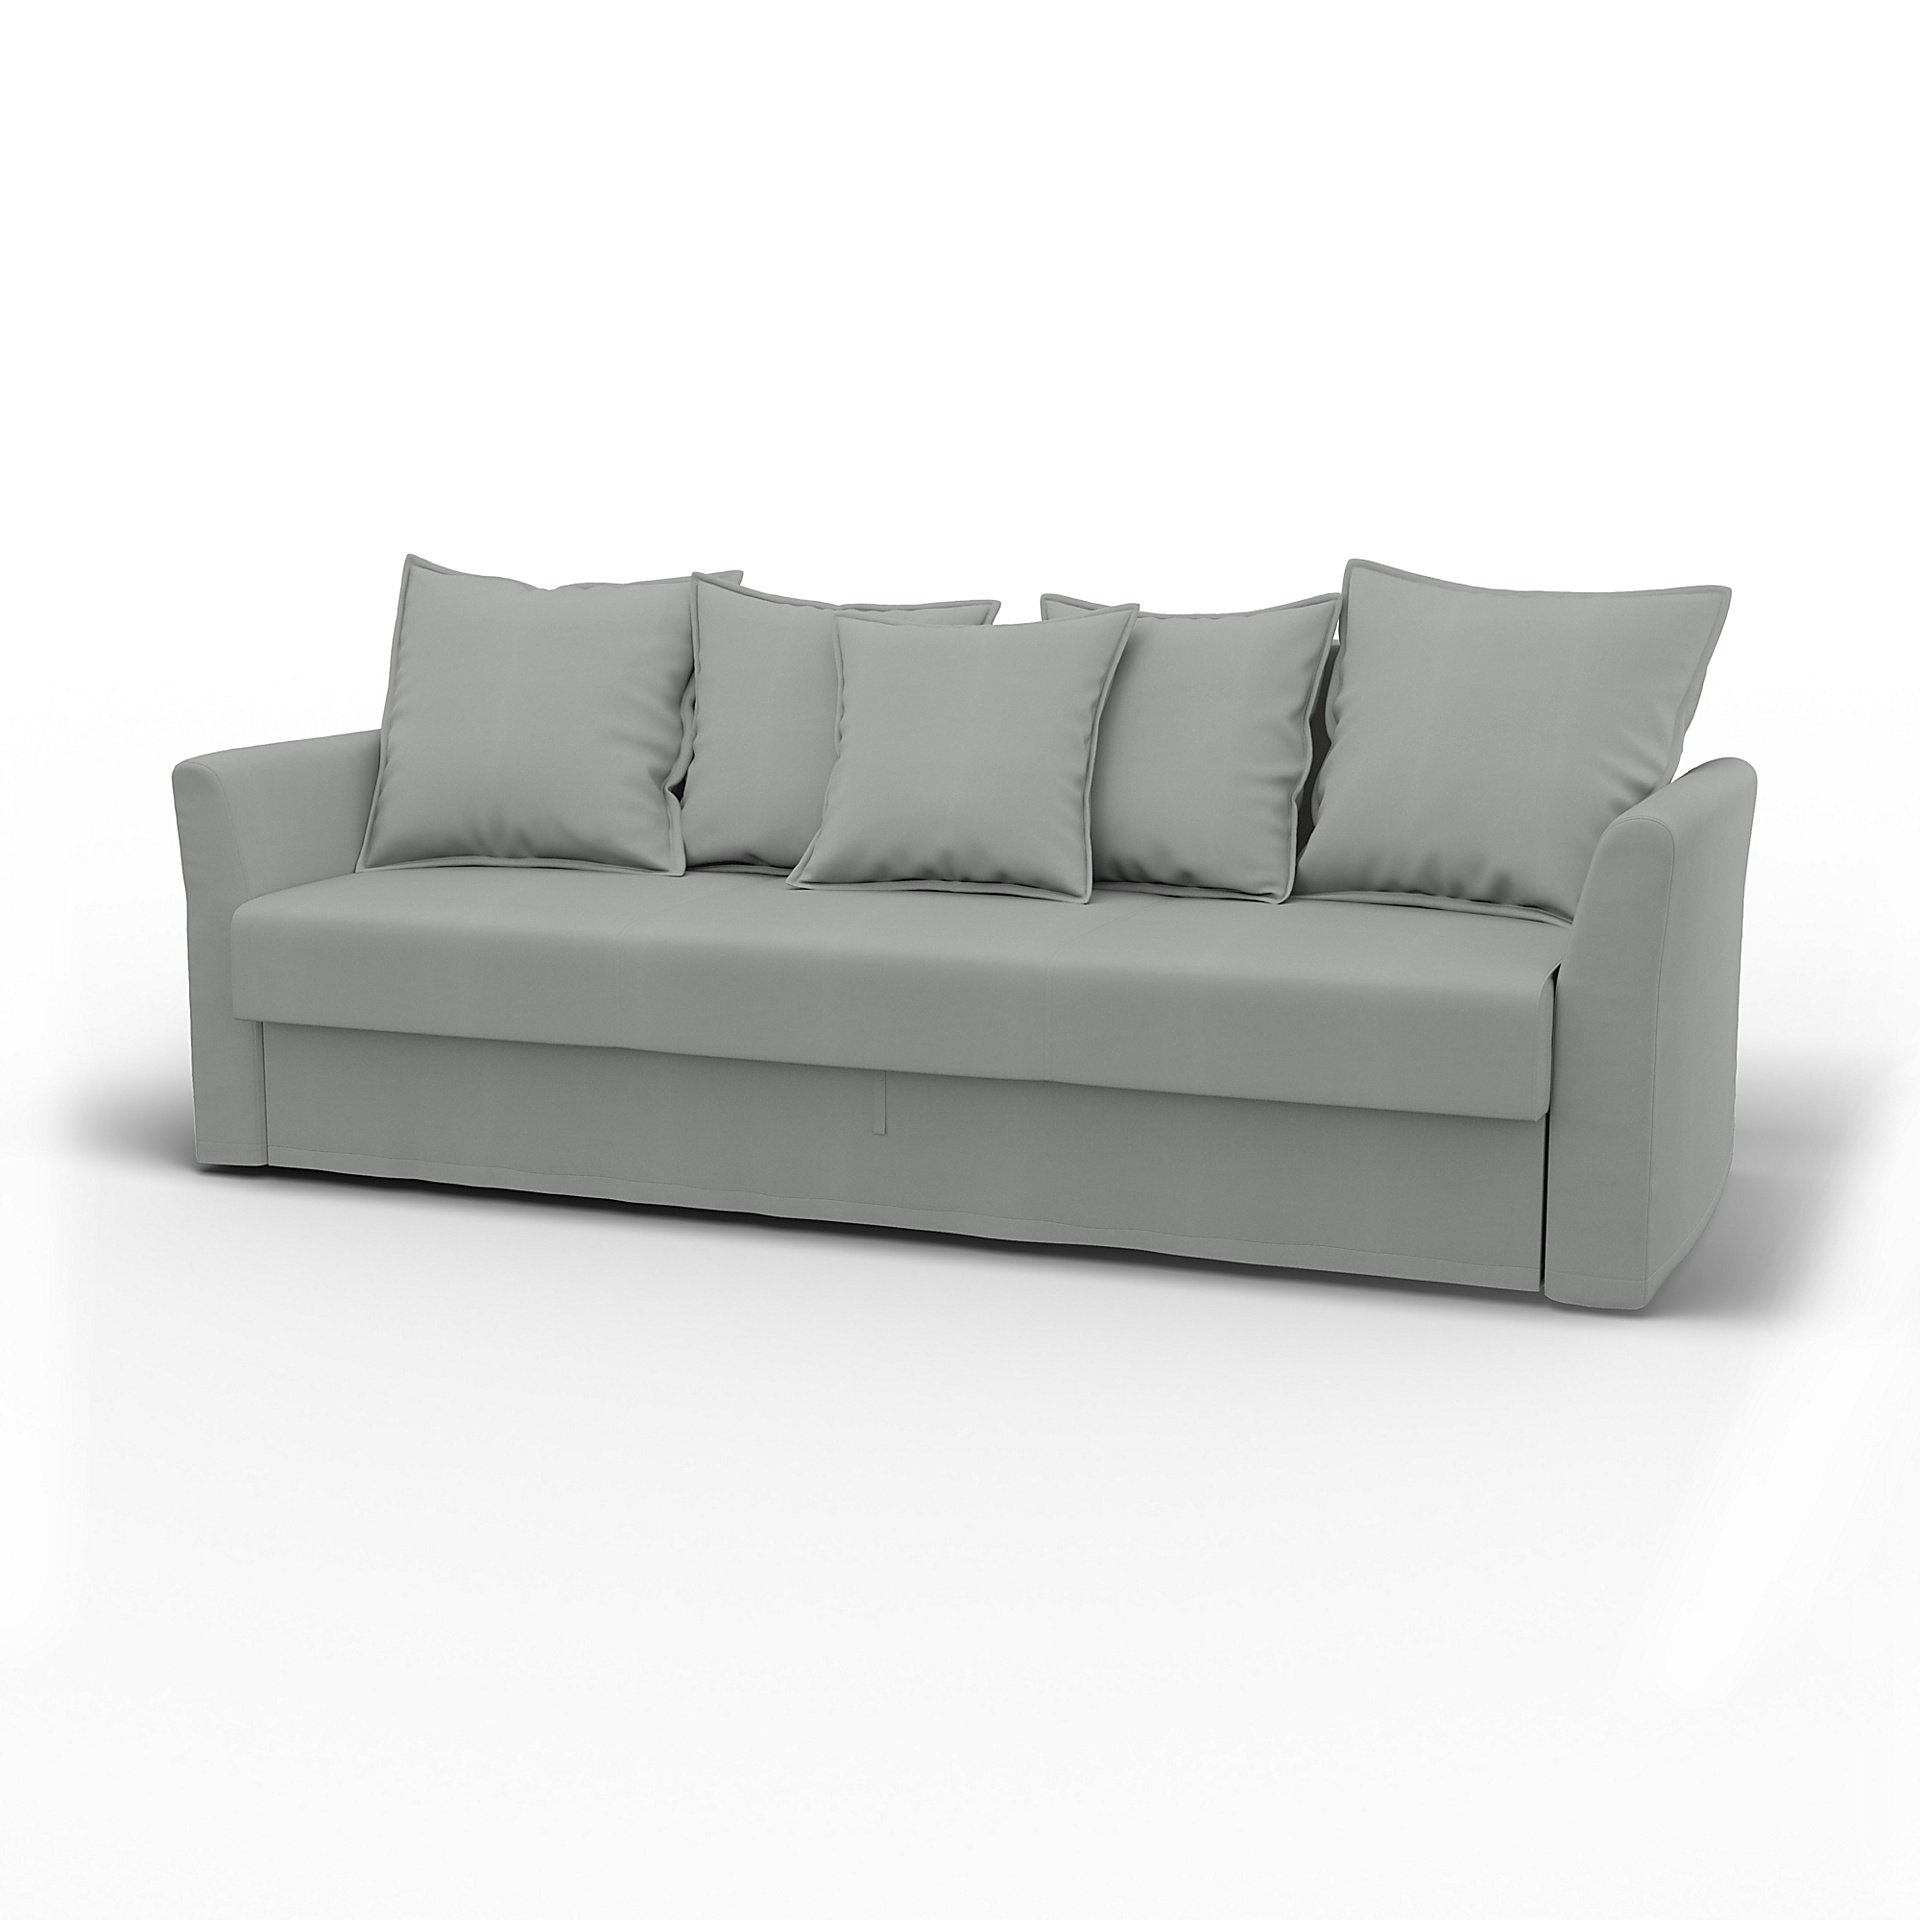 IKEA - Holmsund Sofabed, Silver Grey, Cotton - Bemz